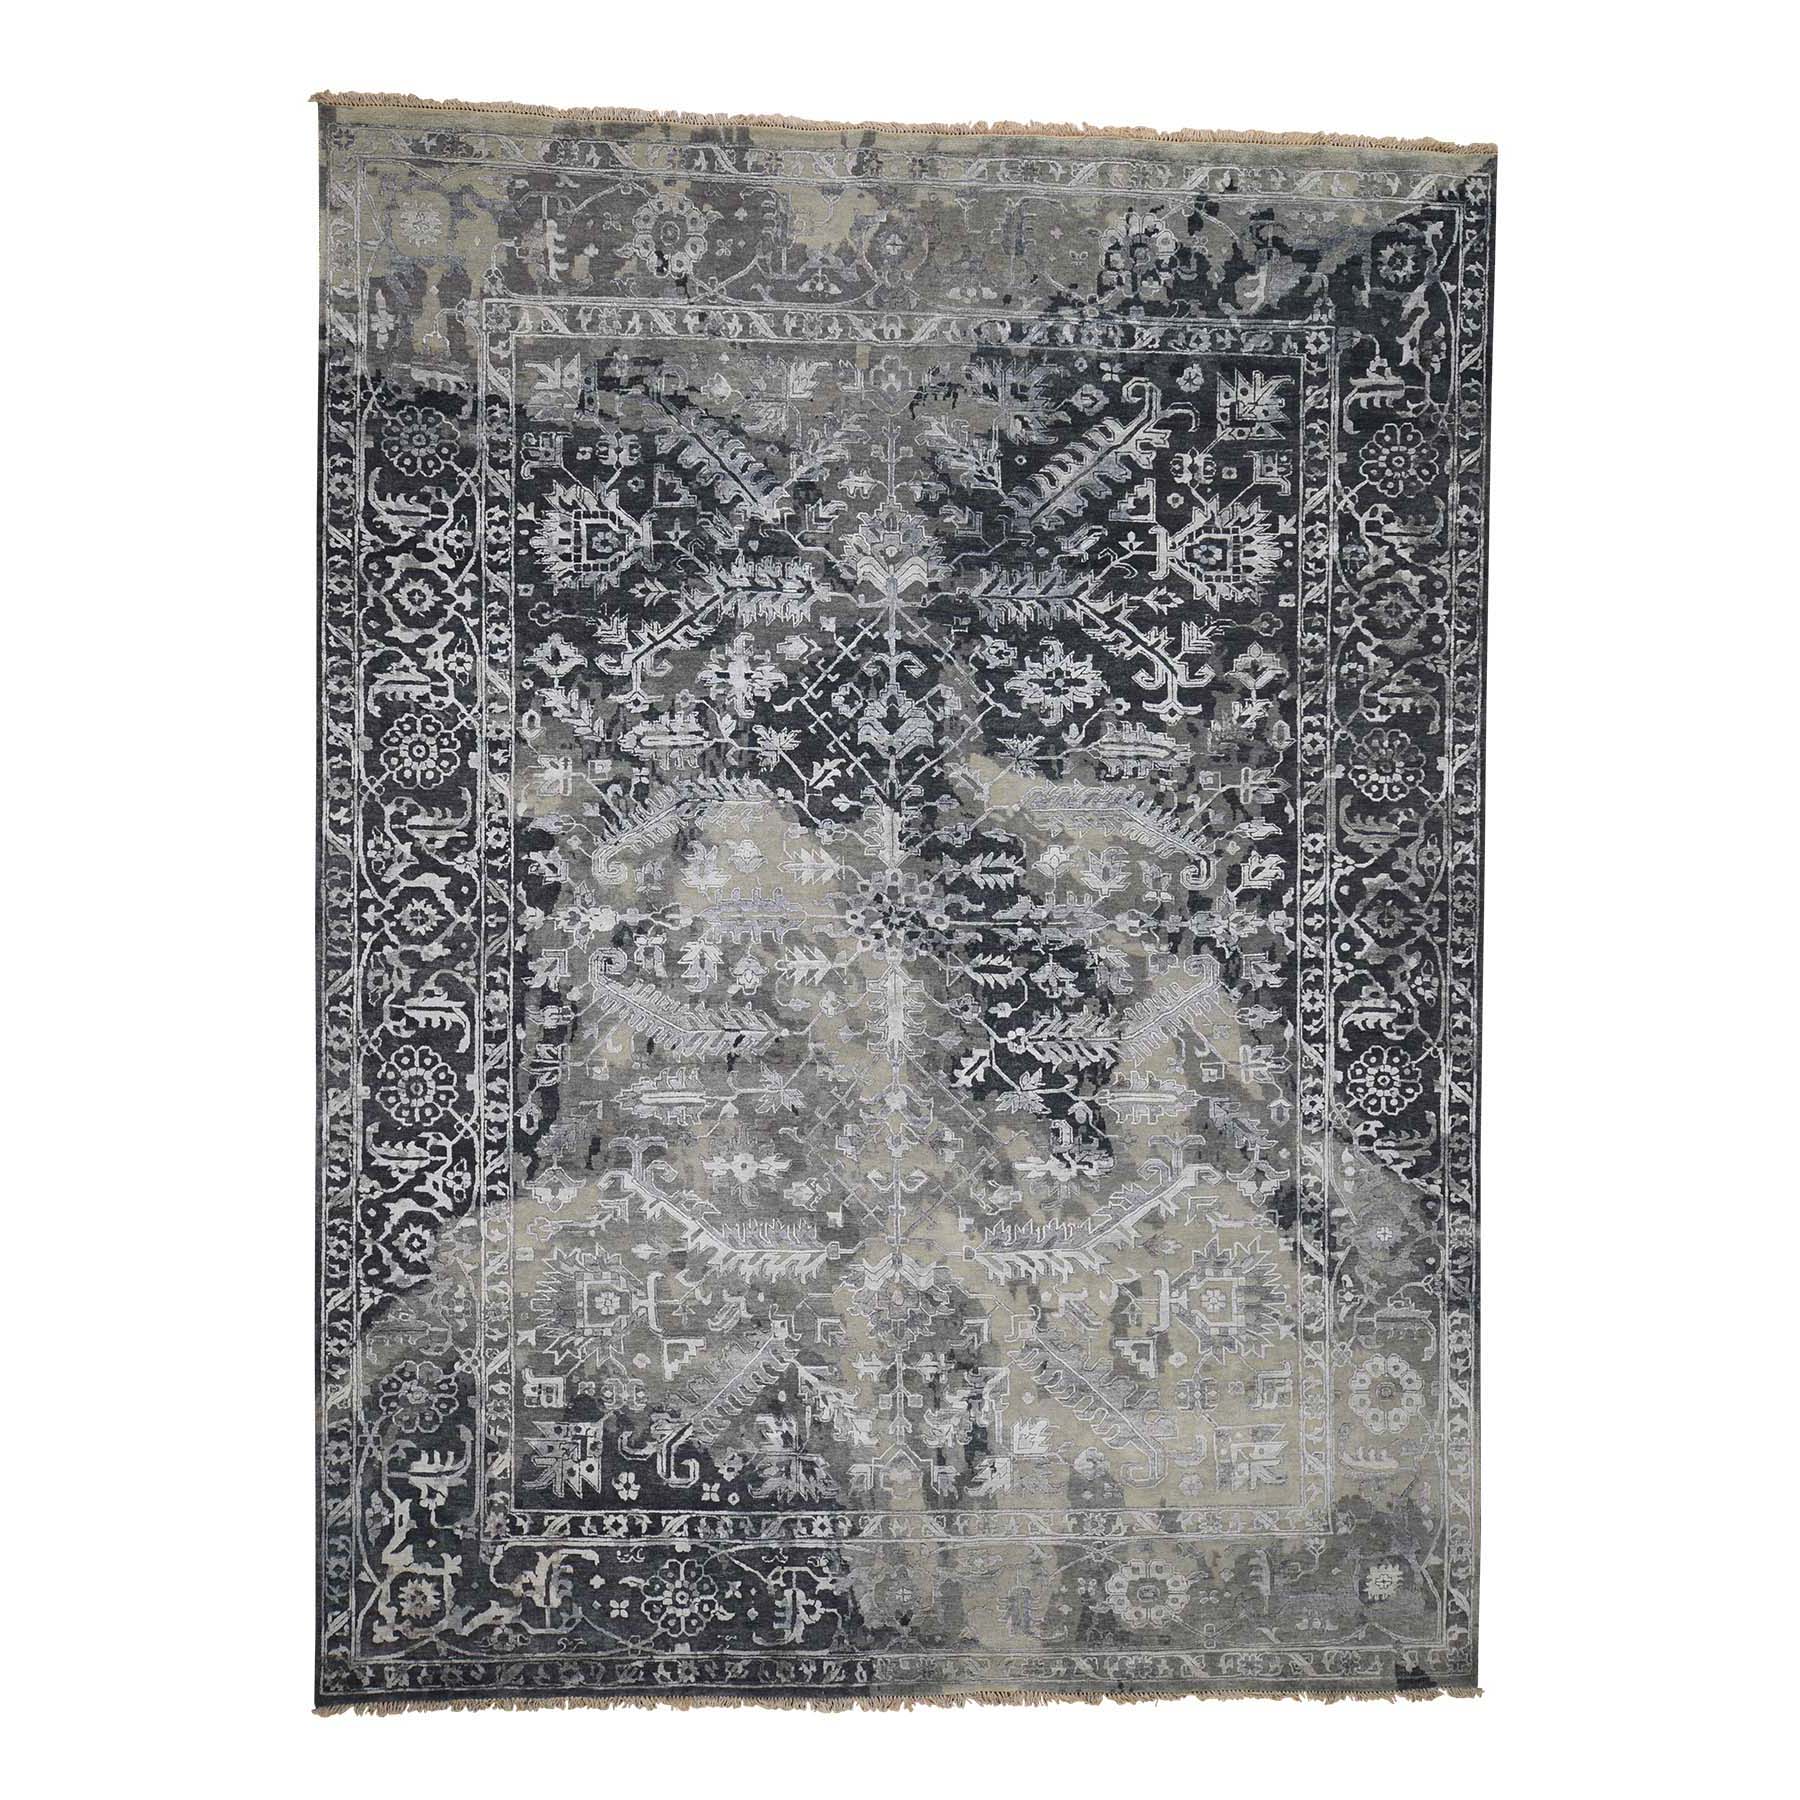 9'x11'10" All Over Design Broken Persian Heriz Wool And Silk Hand Woven Oriental Rug 